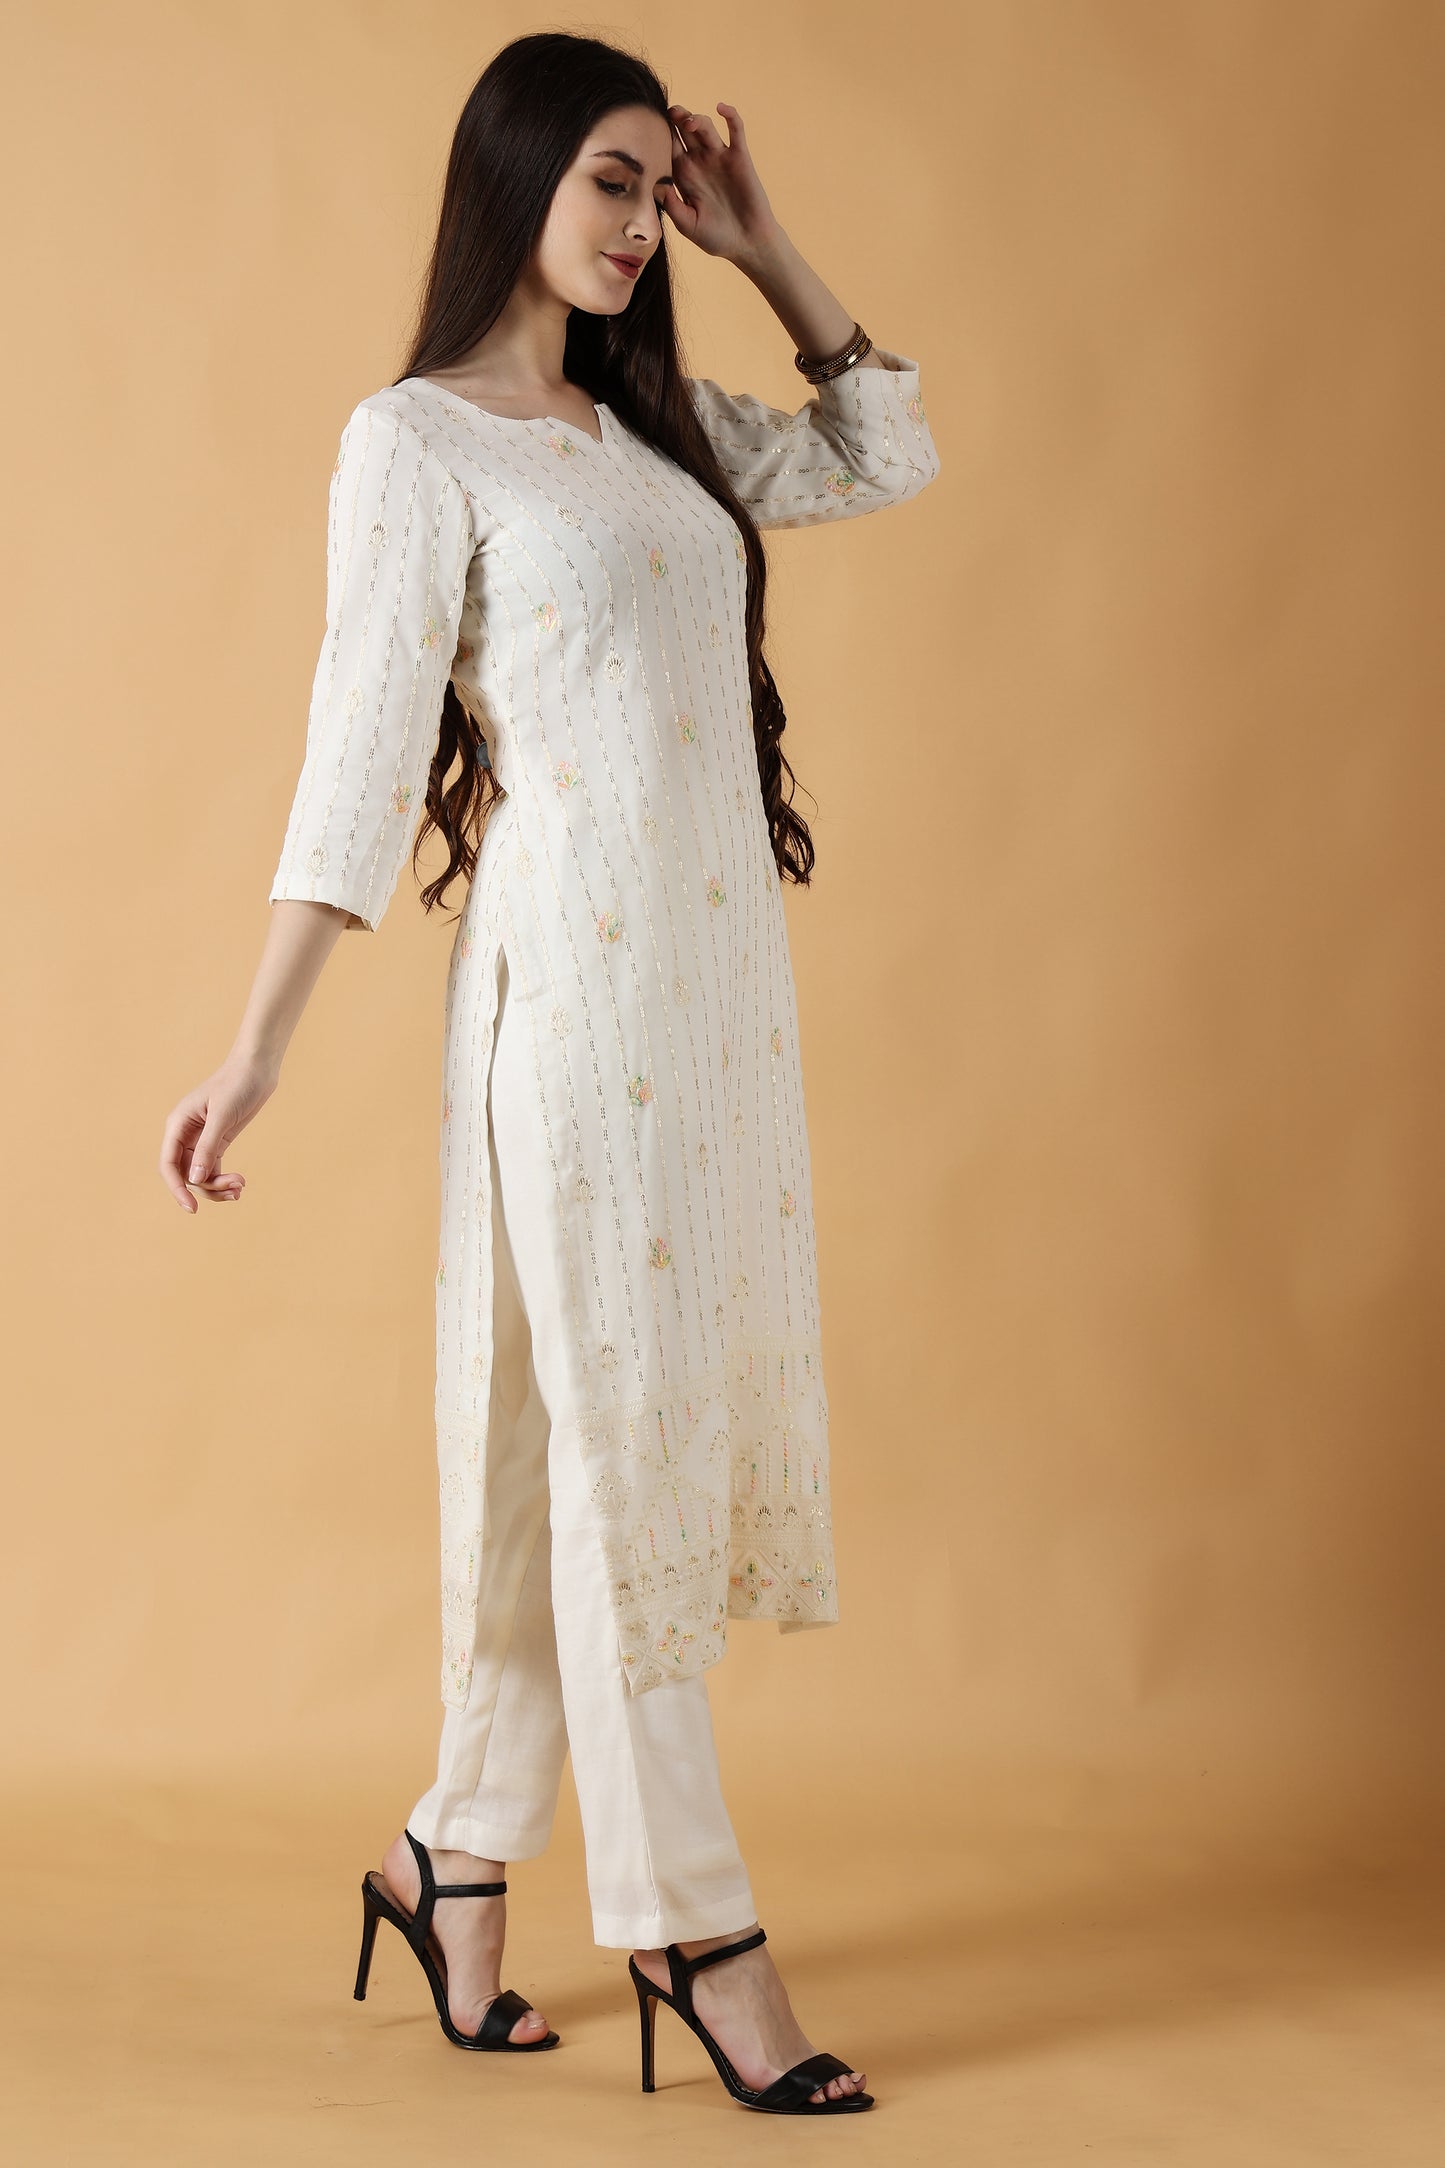 Women's Plus Size White Chikankari party wear kurti set with dupatta | Apella